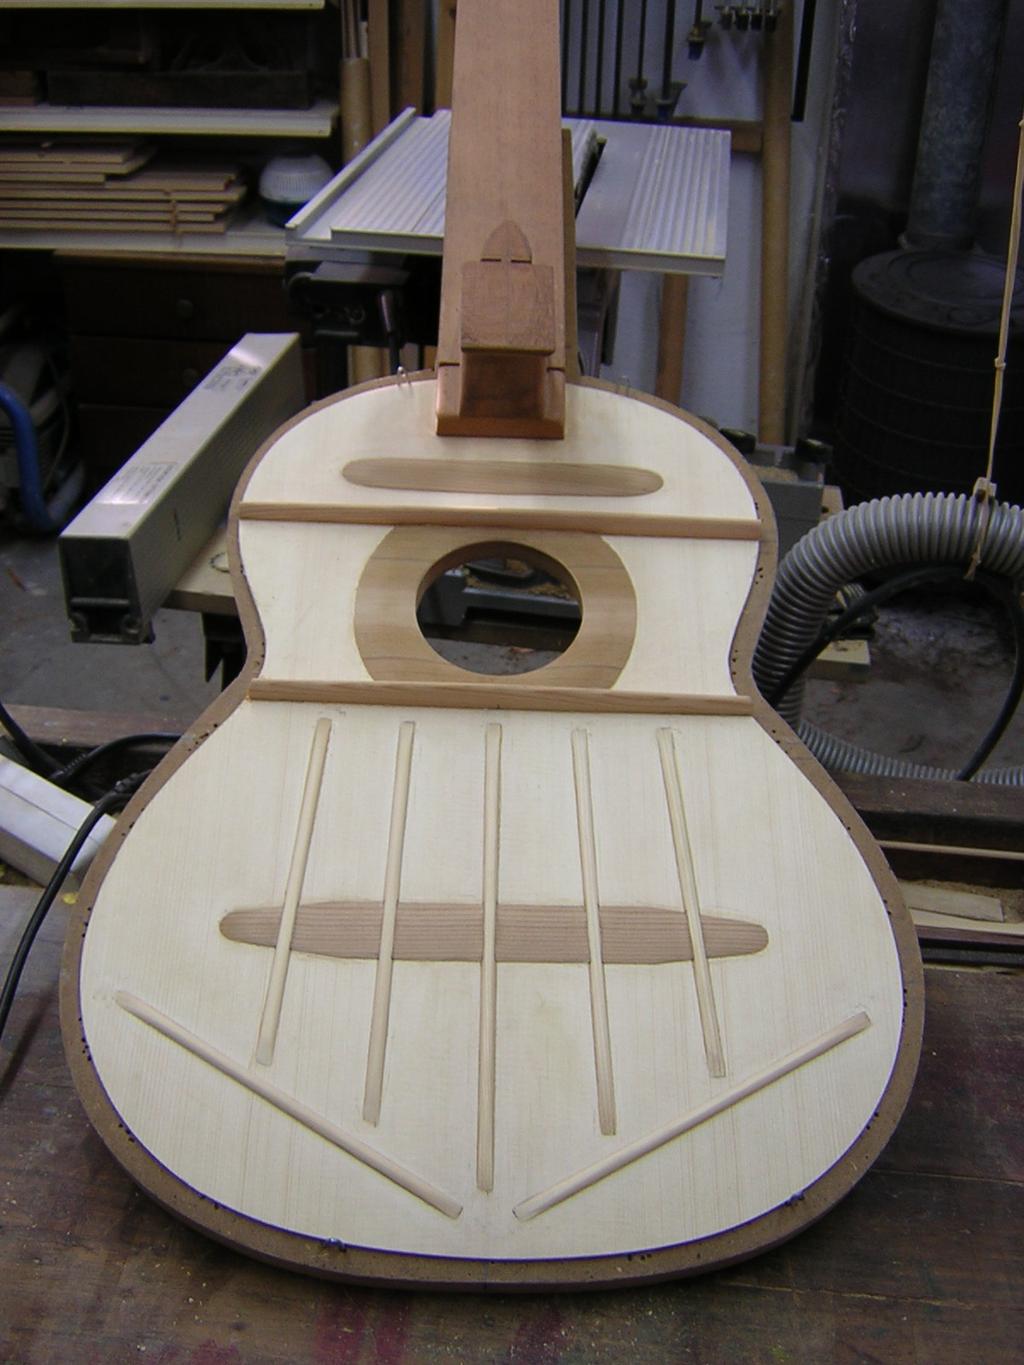 Barretas armónicas Una vez recortada la silueta de la guitarra, se coloca sobre el molde y se encolan todas las piezas que configurarán el sonido